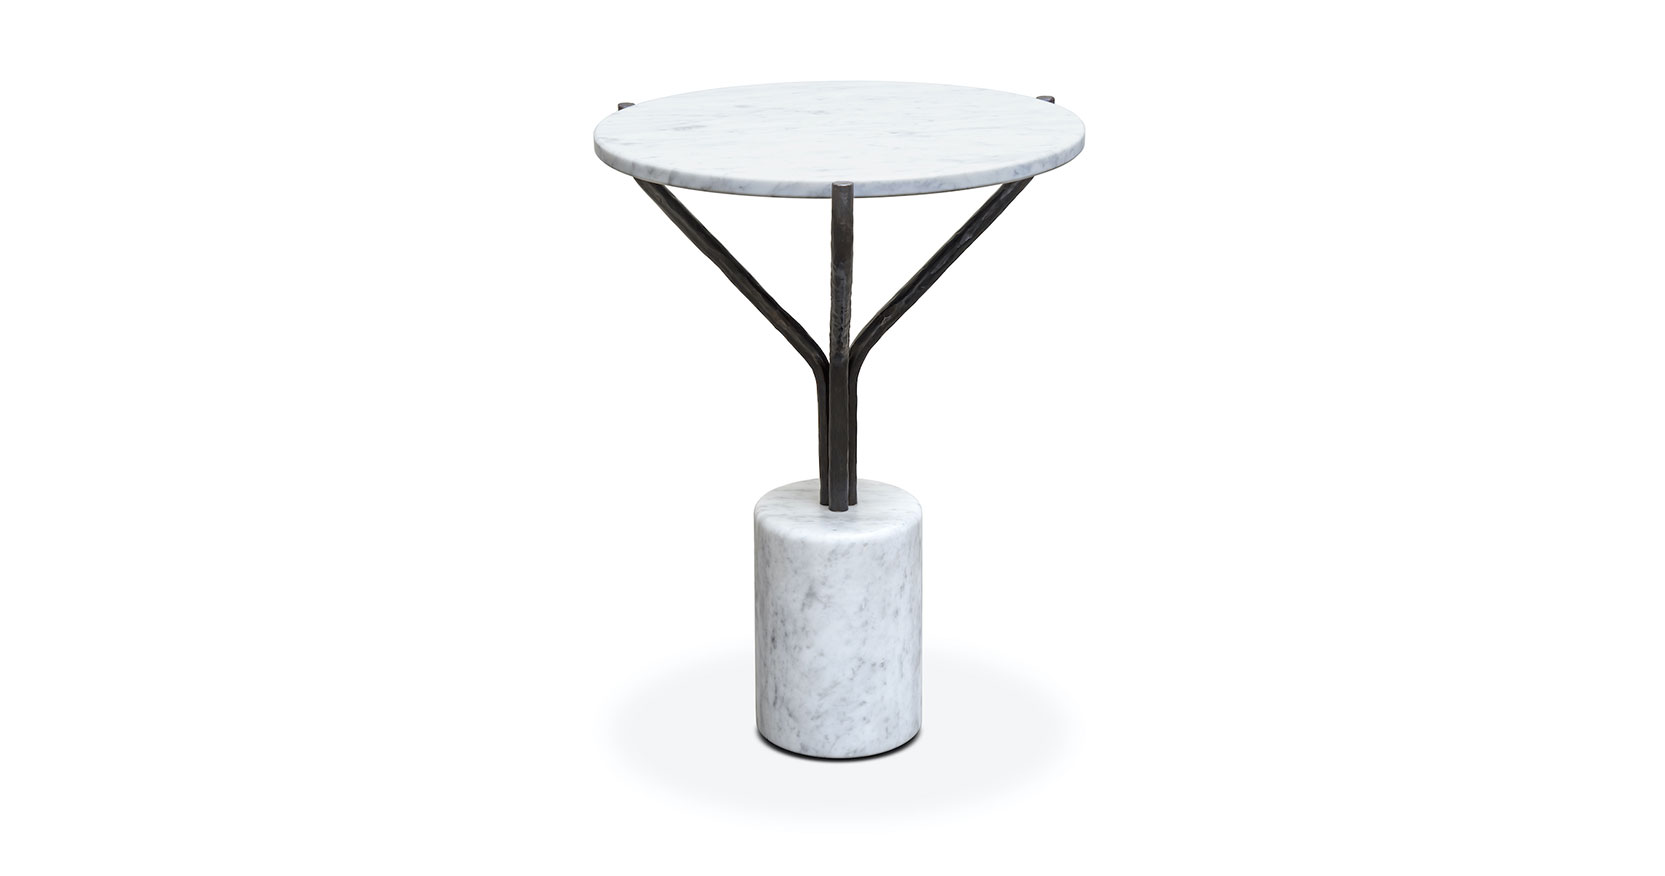 Philippine Lemaire, petite table ronde, plateau en marbre blanc , socle en marbre blanc en forme de cylindre, pied en fer forgé noir qui se sépare en 3 tiges pour soutenir le plateau